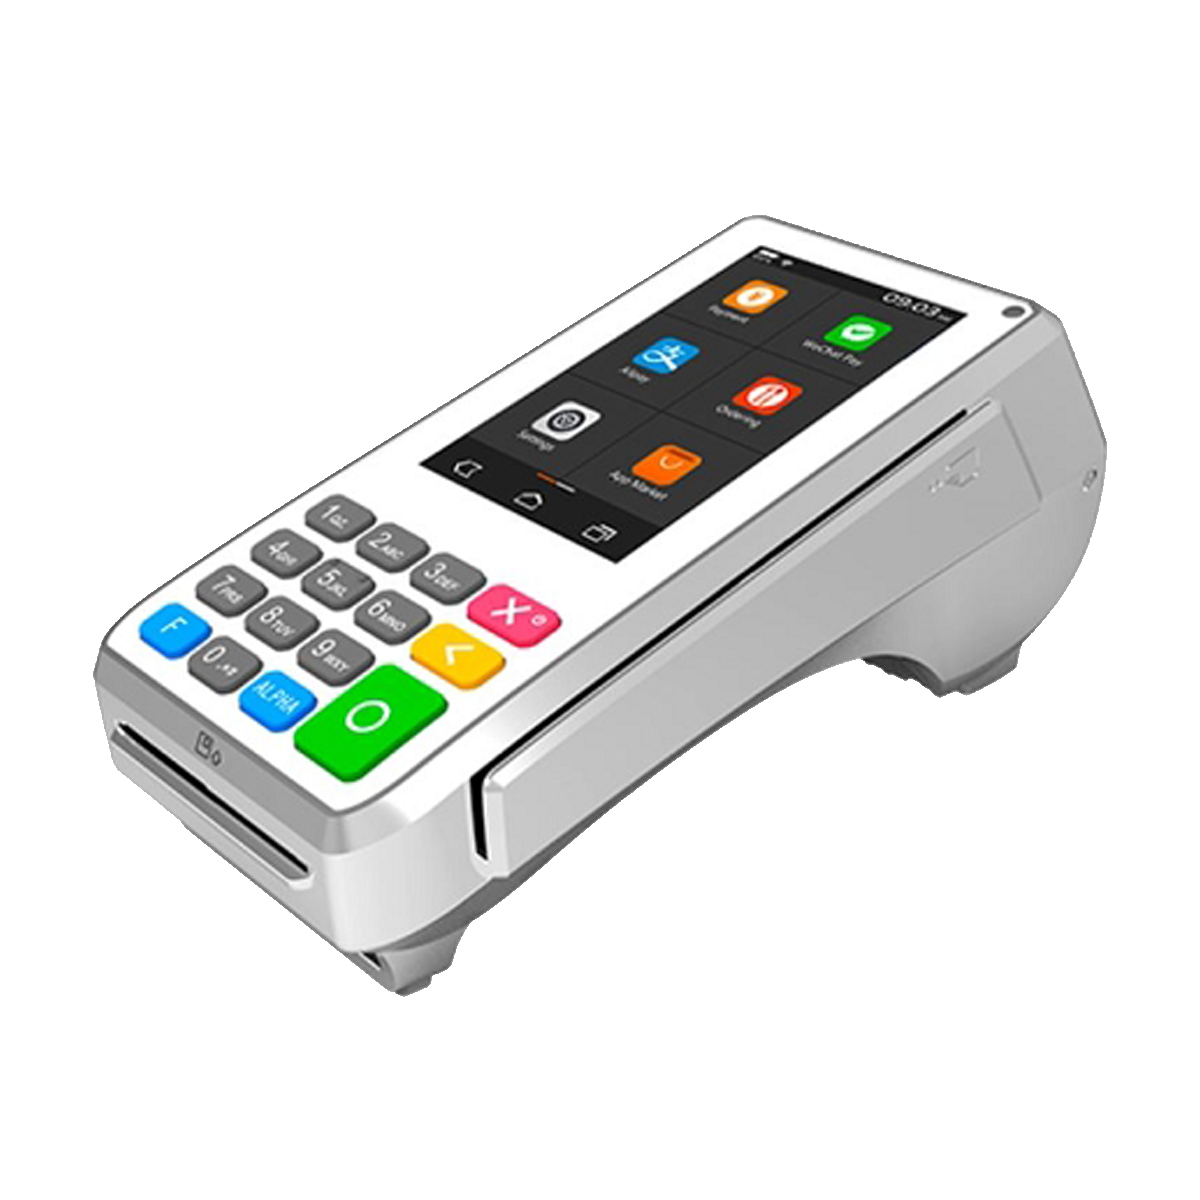 Pax A80 Countertop Credit Card Machine